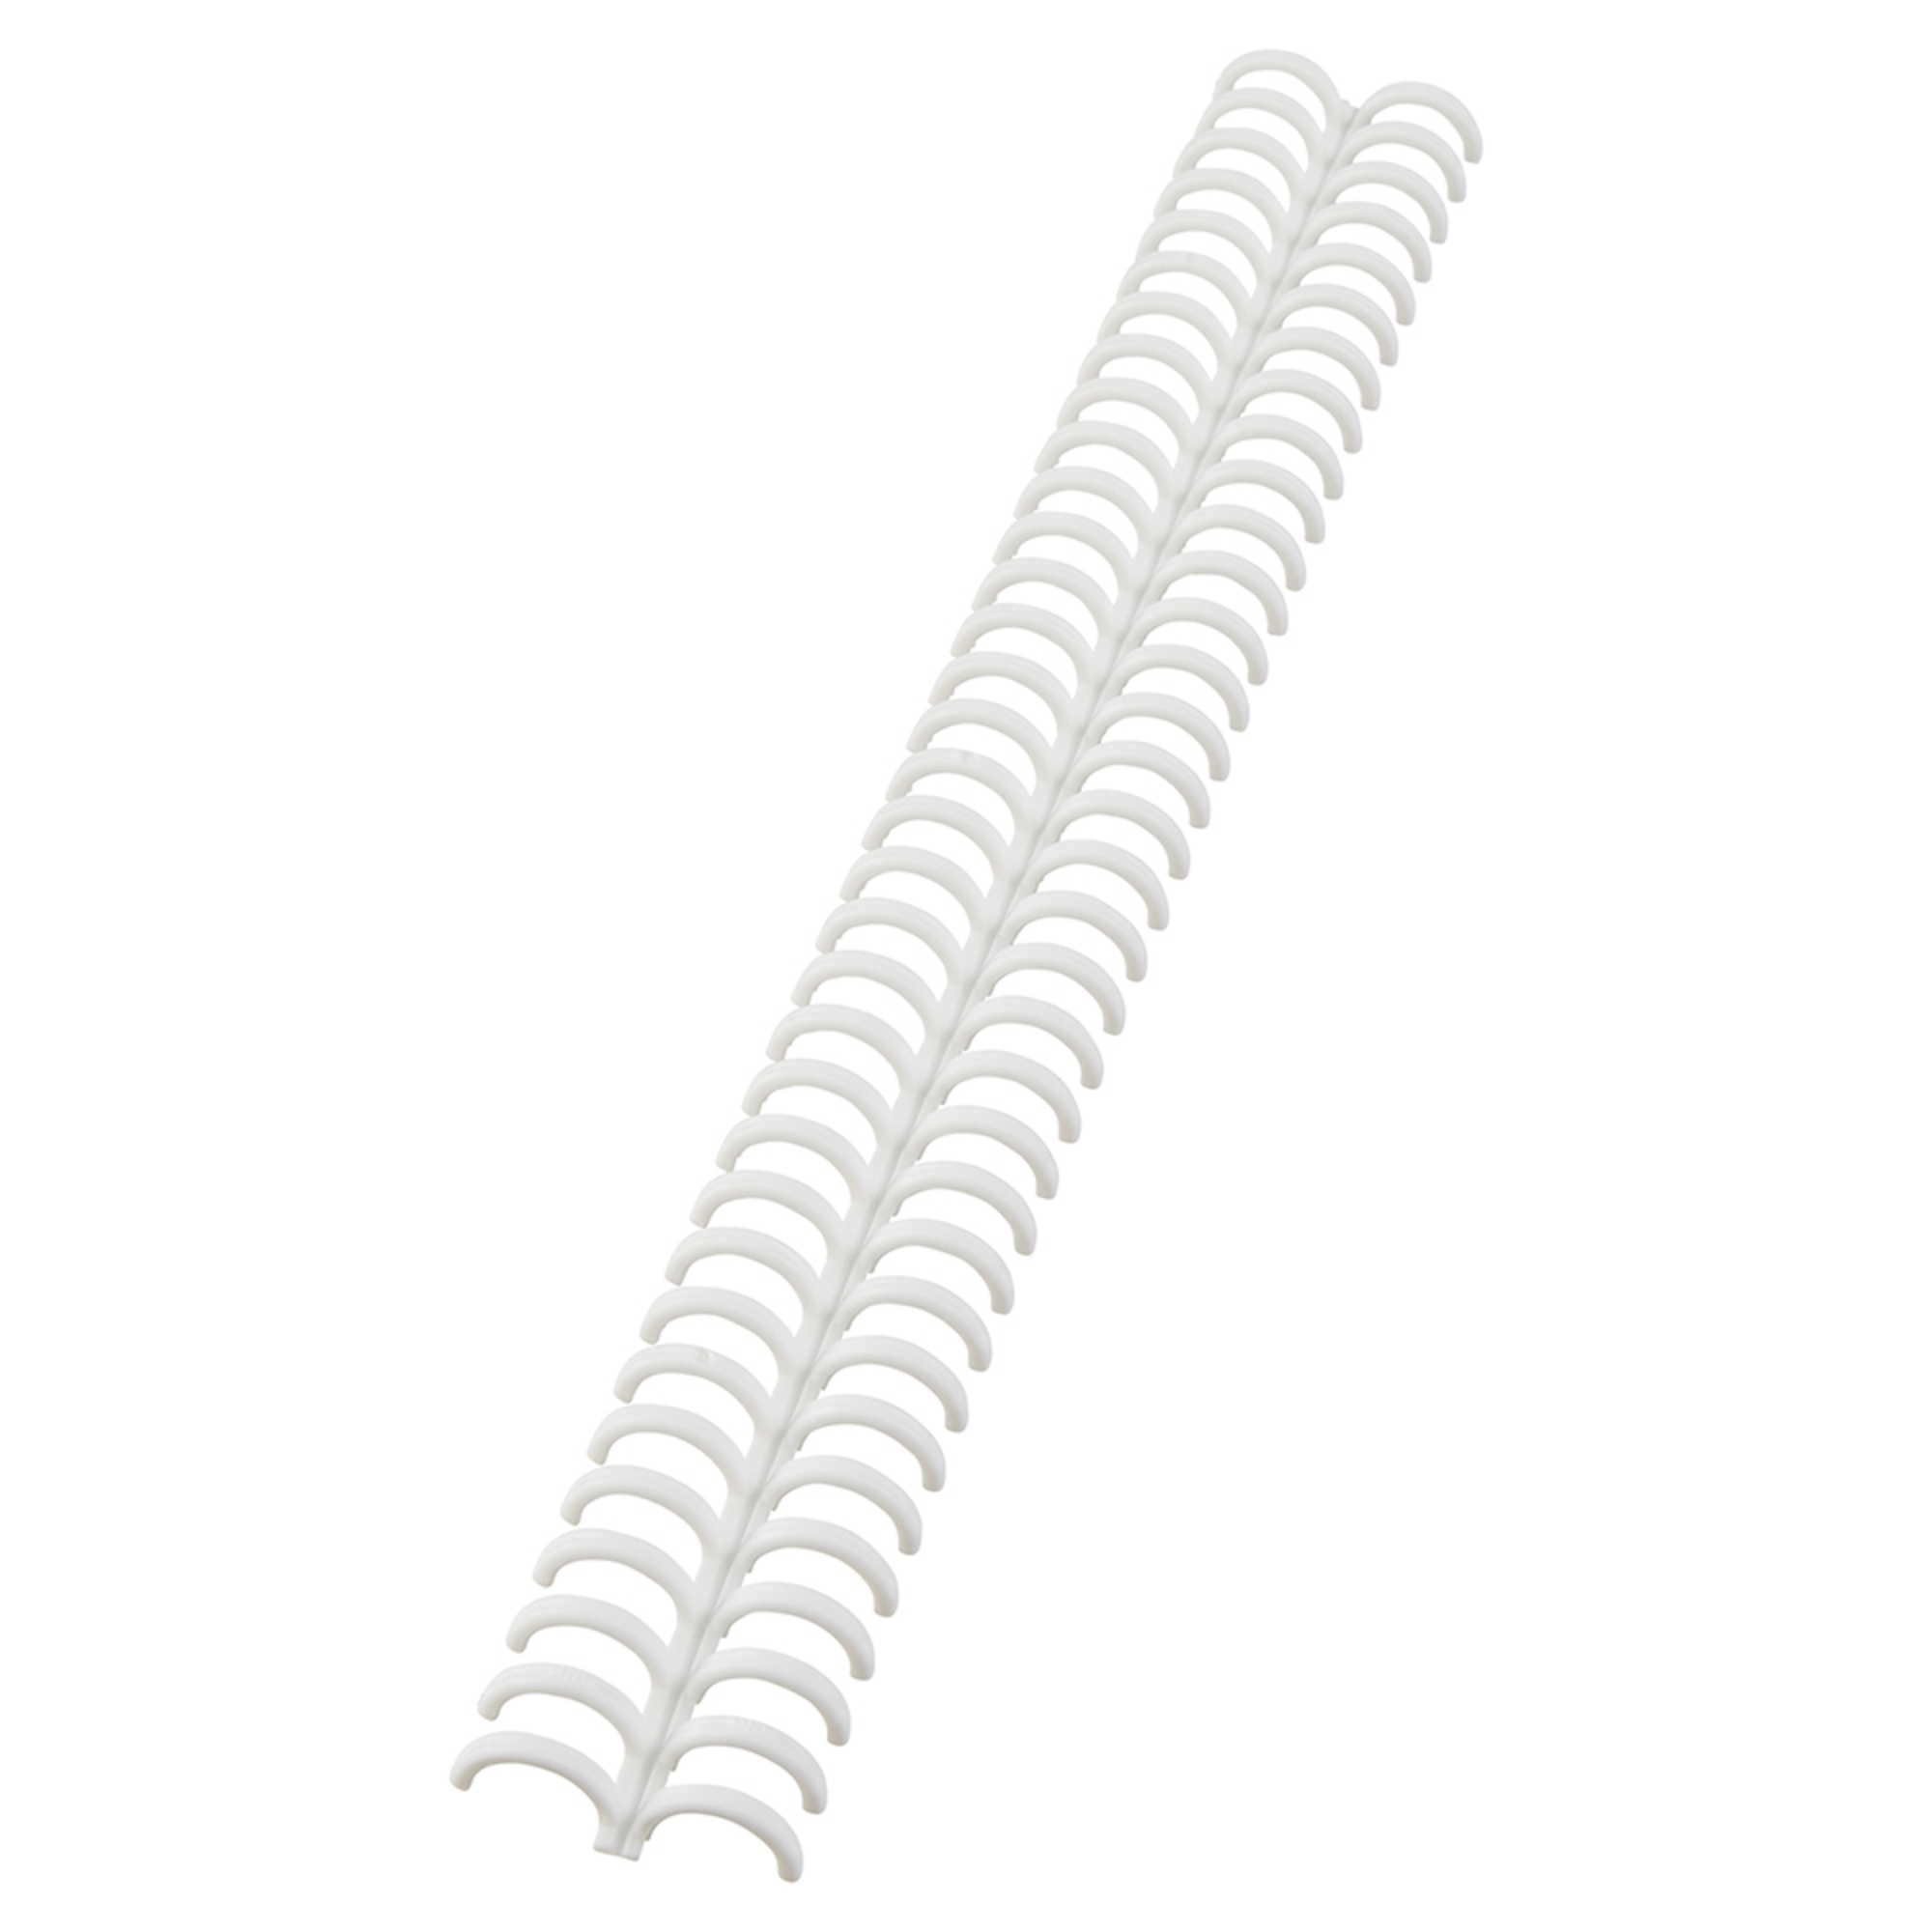 Argolas de Encadernação Espiral Ibiclick, A4, 12 mm, Branco, 50 Unidades